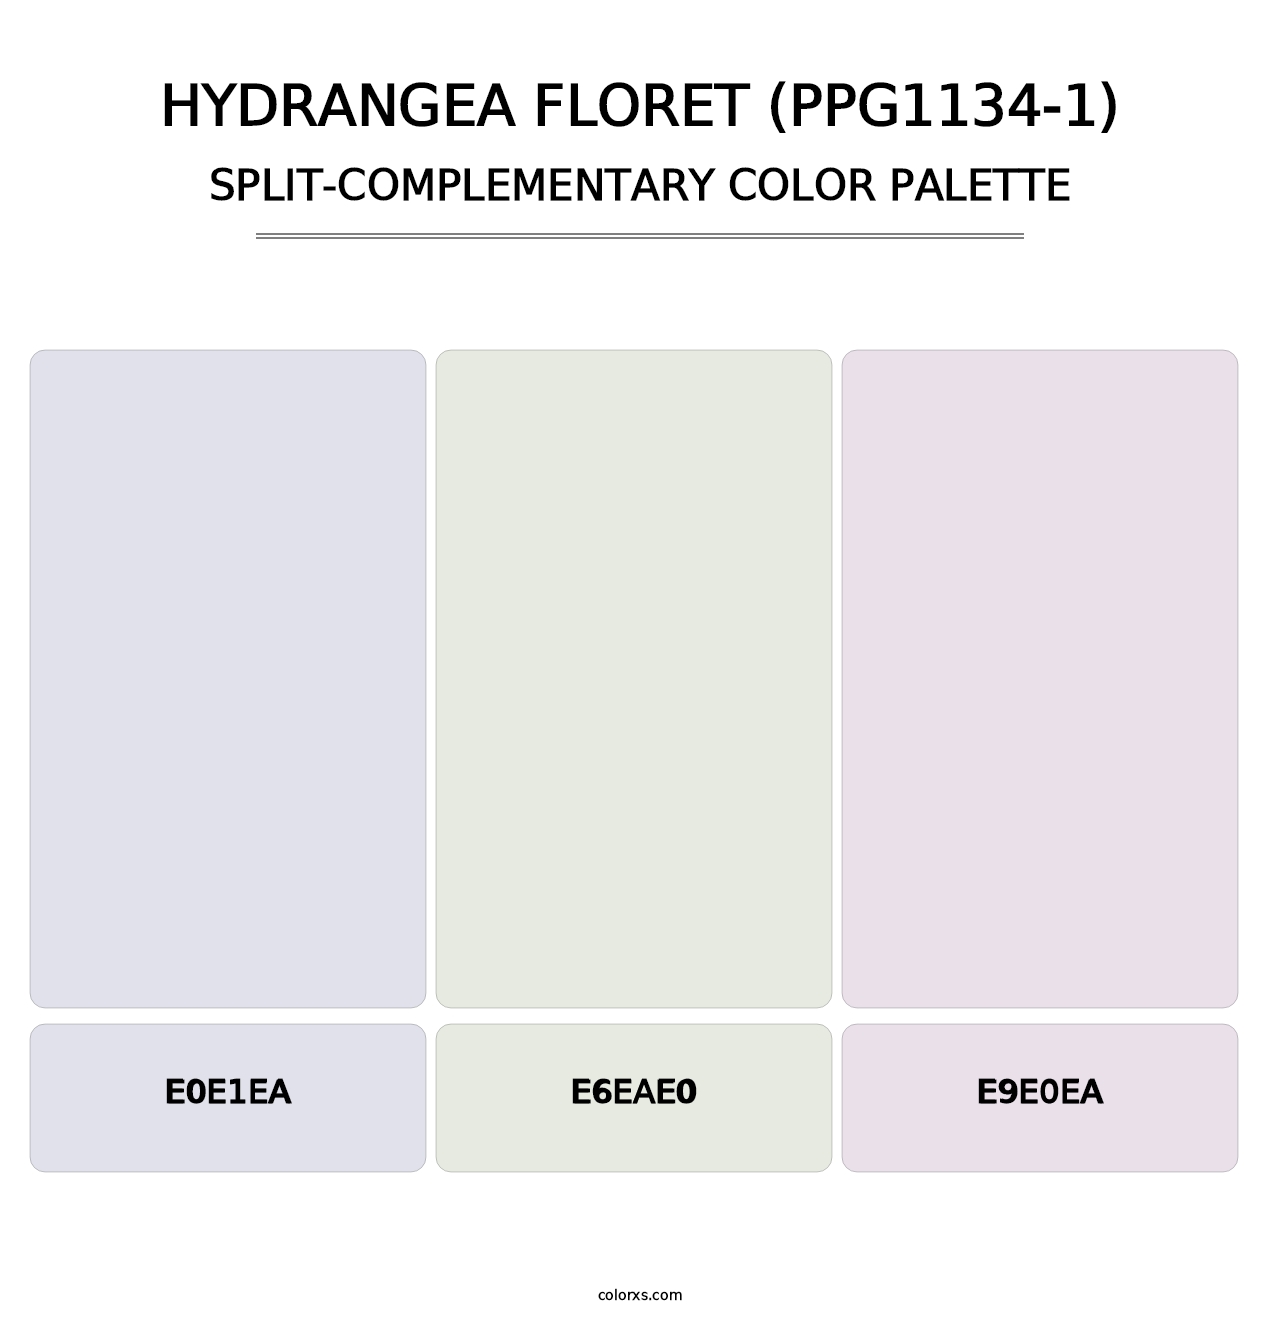 Hydrangea Floret (PPG1134-1) - Split-Complementary Color Palette